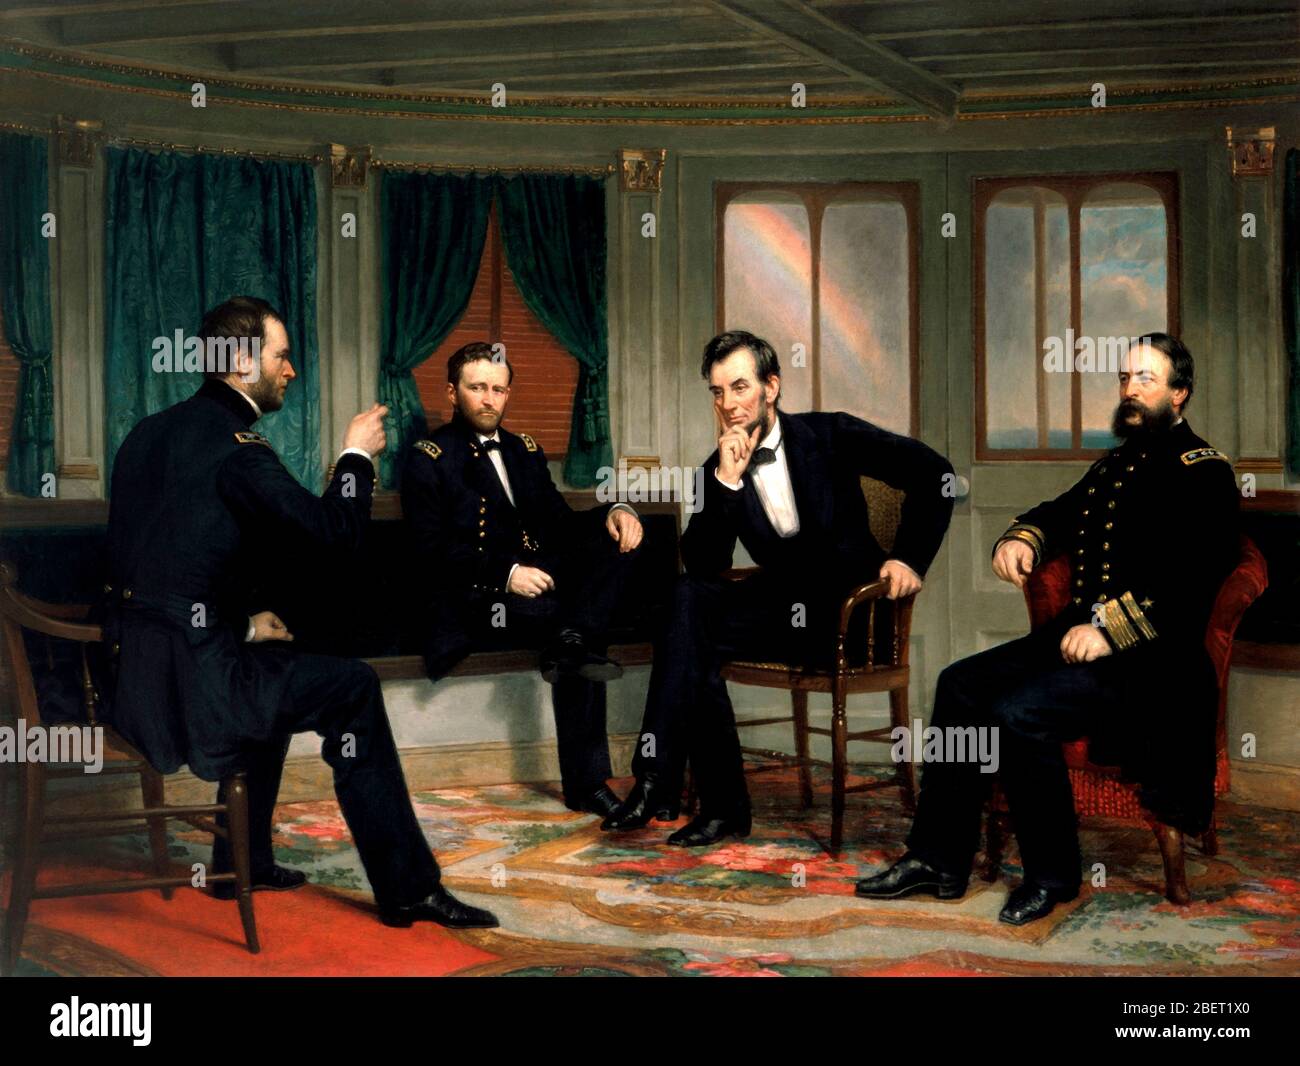 Pintura de la Guerra Civil de la reunión histórica del Alto mando de la Unión durante la Guerra Civil Americana. Foto de stock